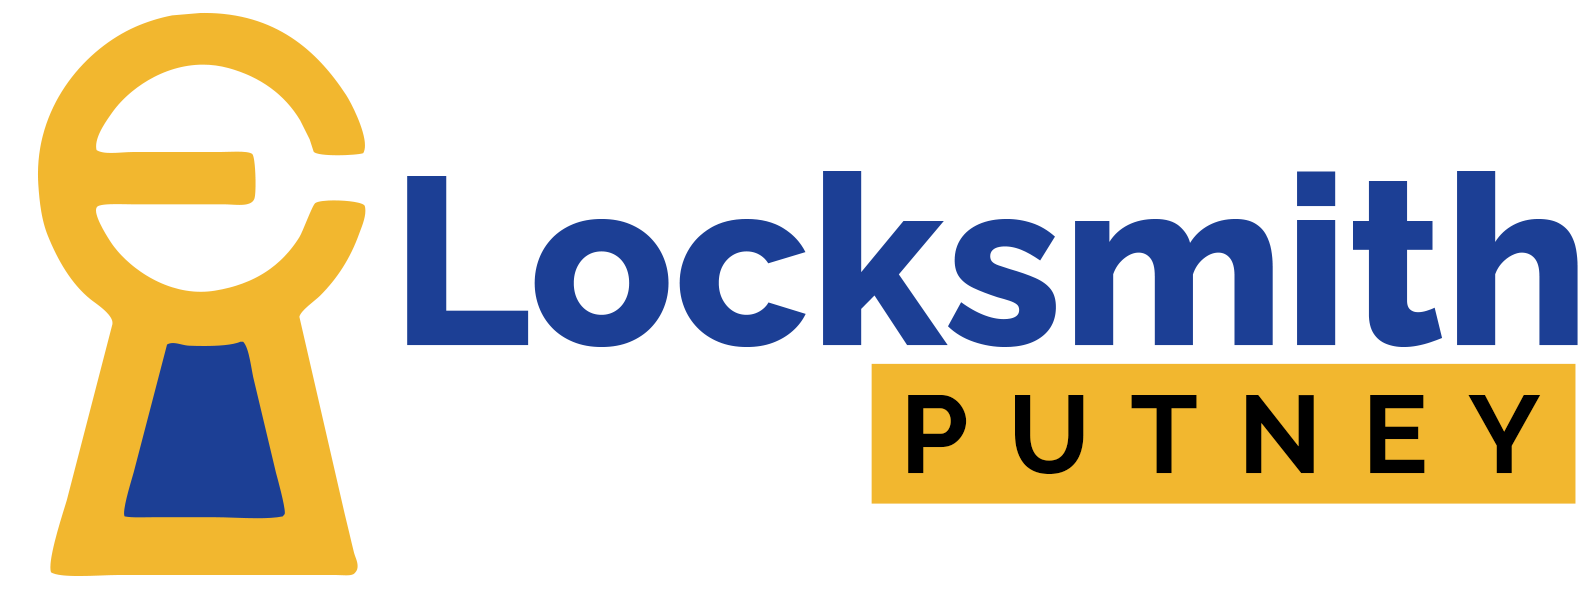 Locksmith-Putney